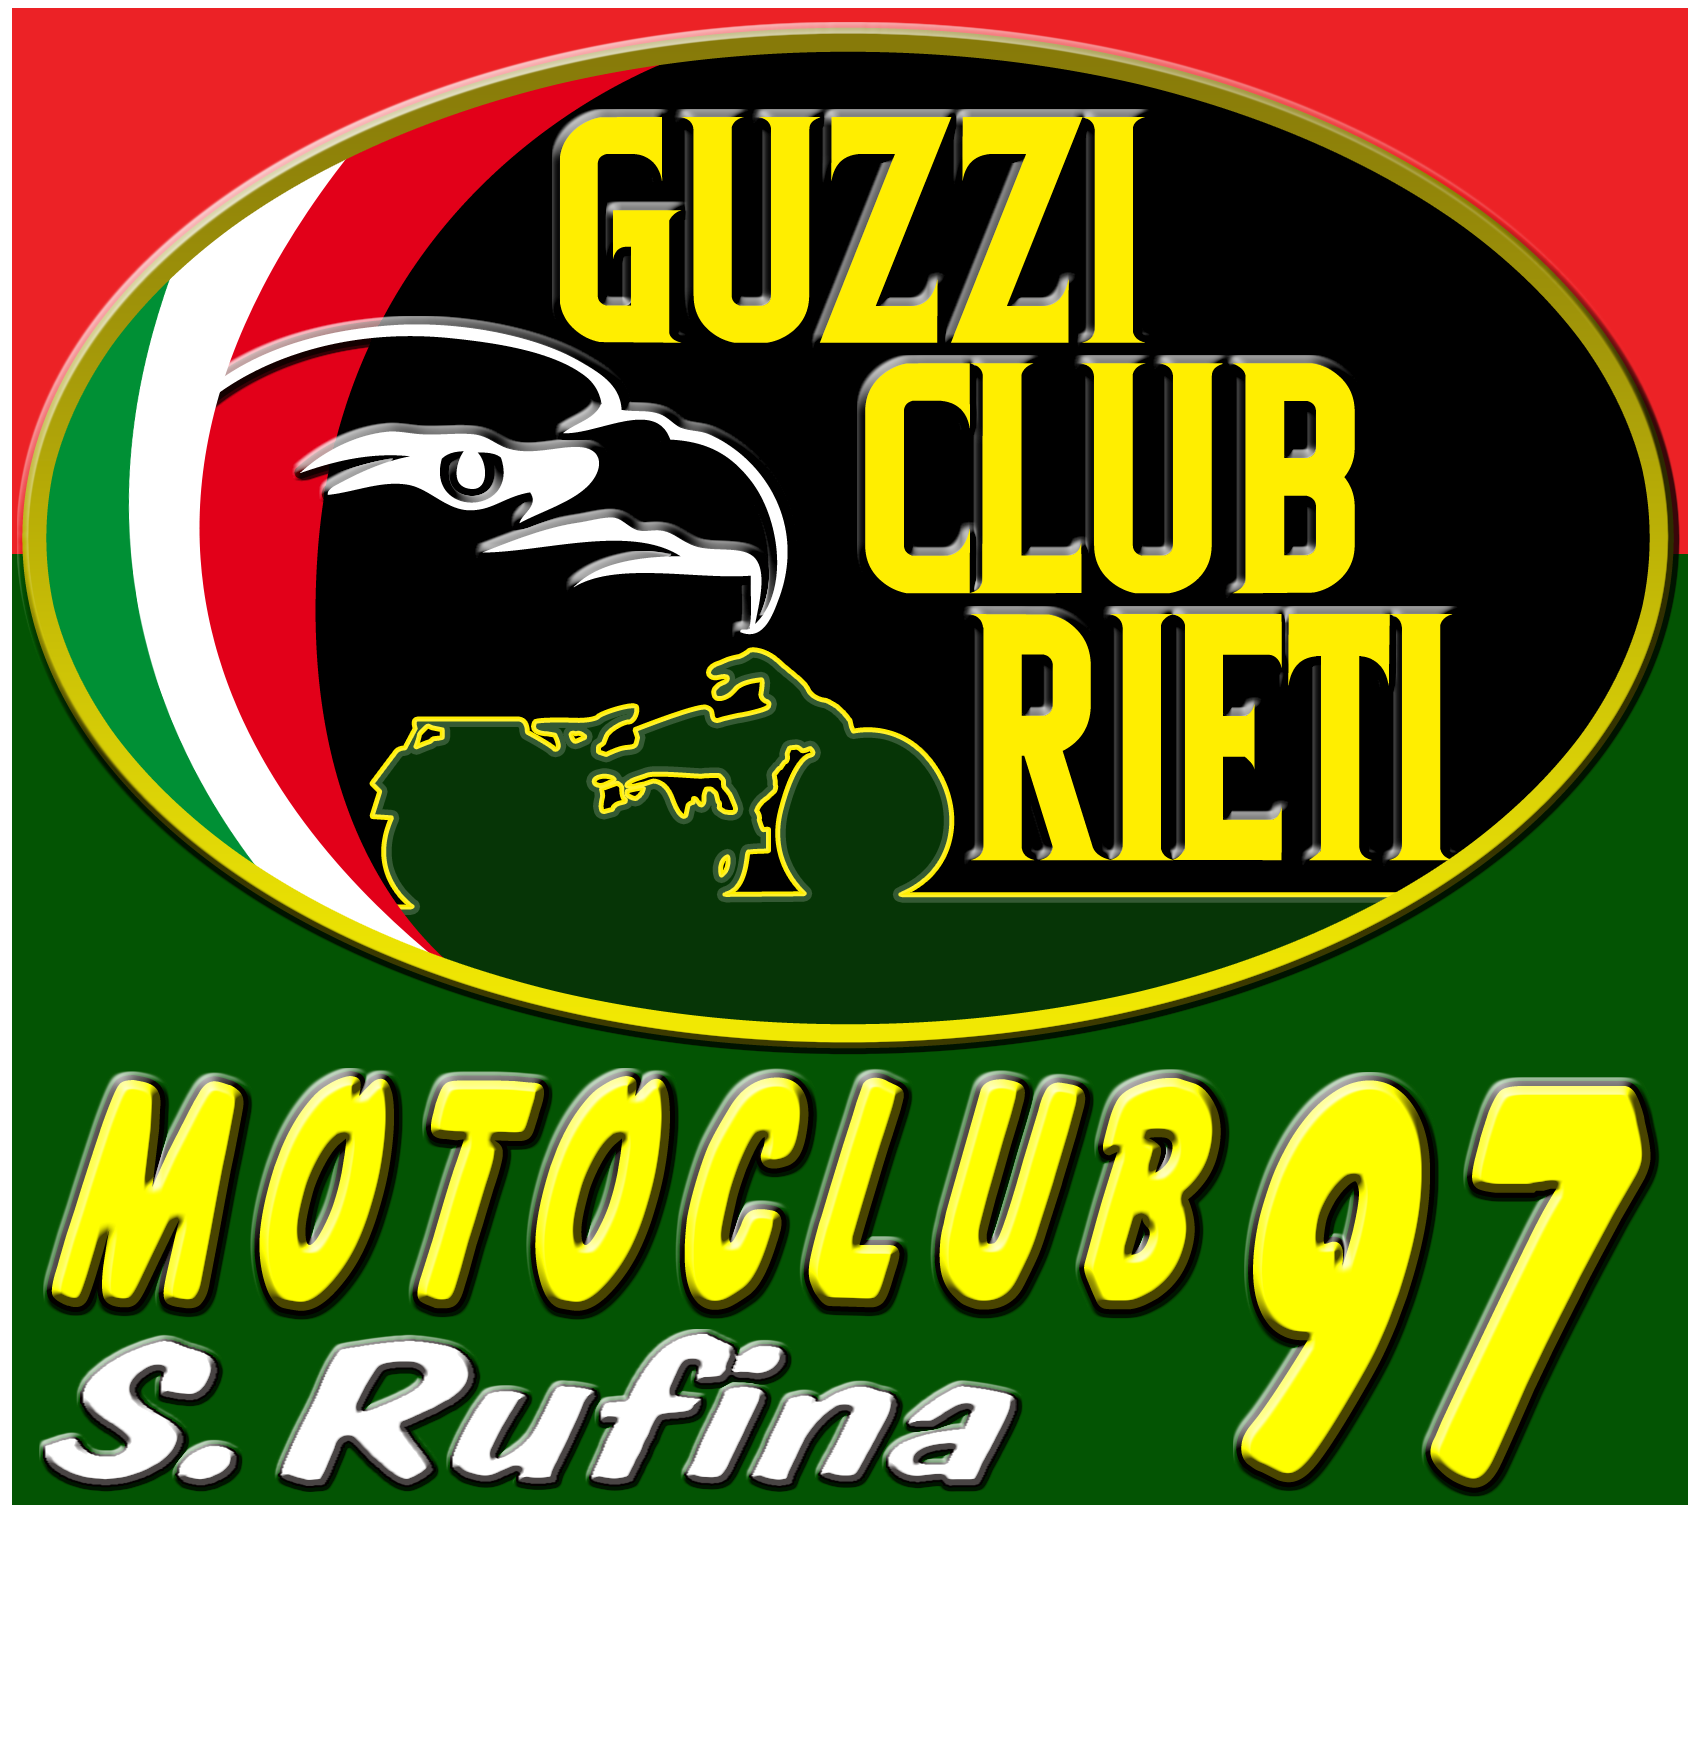 MOTOCLUB '97 S.RUFINA - GUZZI CLUB RIETI